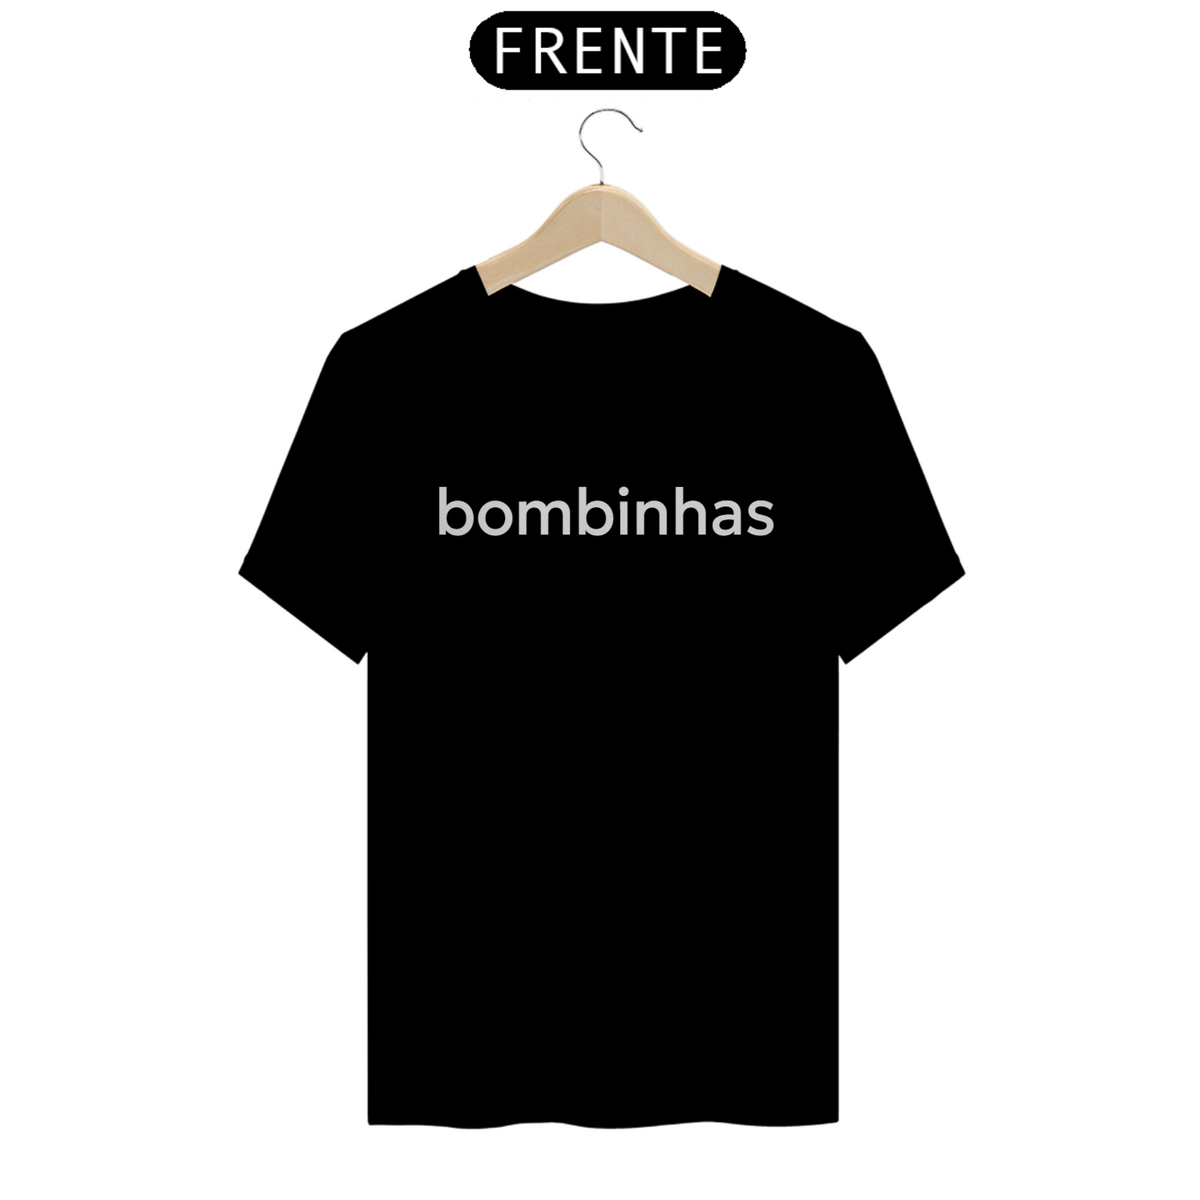 Nome do produto: Camiseta Bombinhas Classic pt